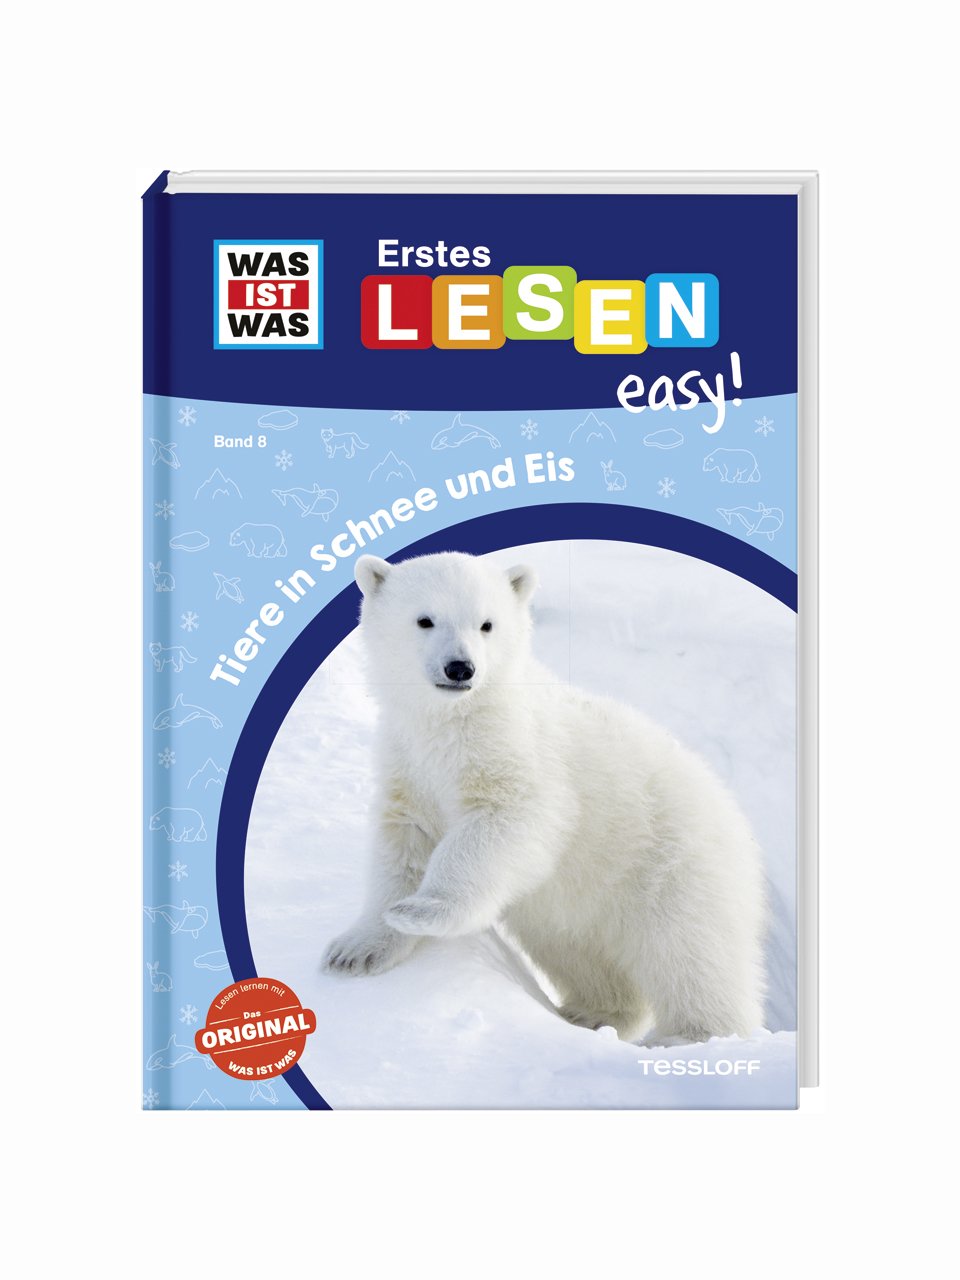 WAS IST WAS Erstes Lesen easy: Tiere in Schnee und Eis